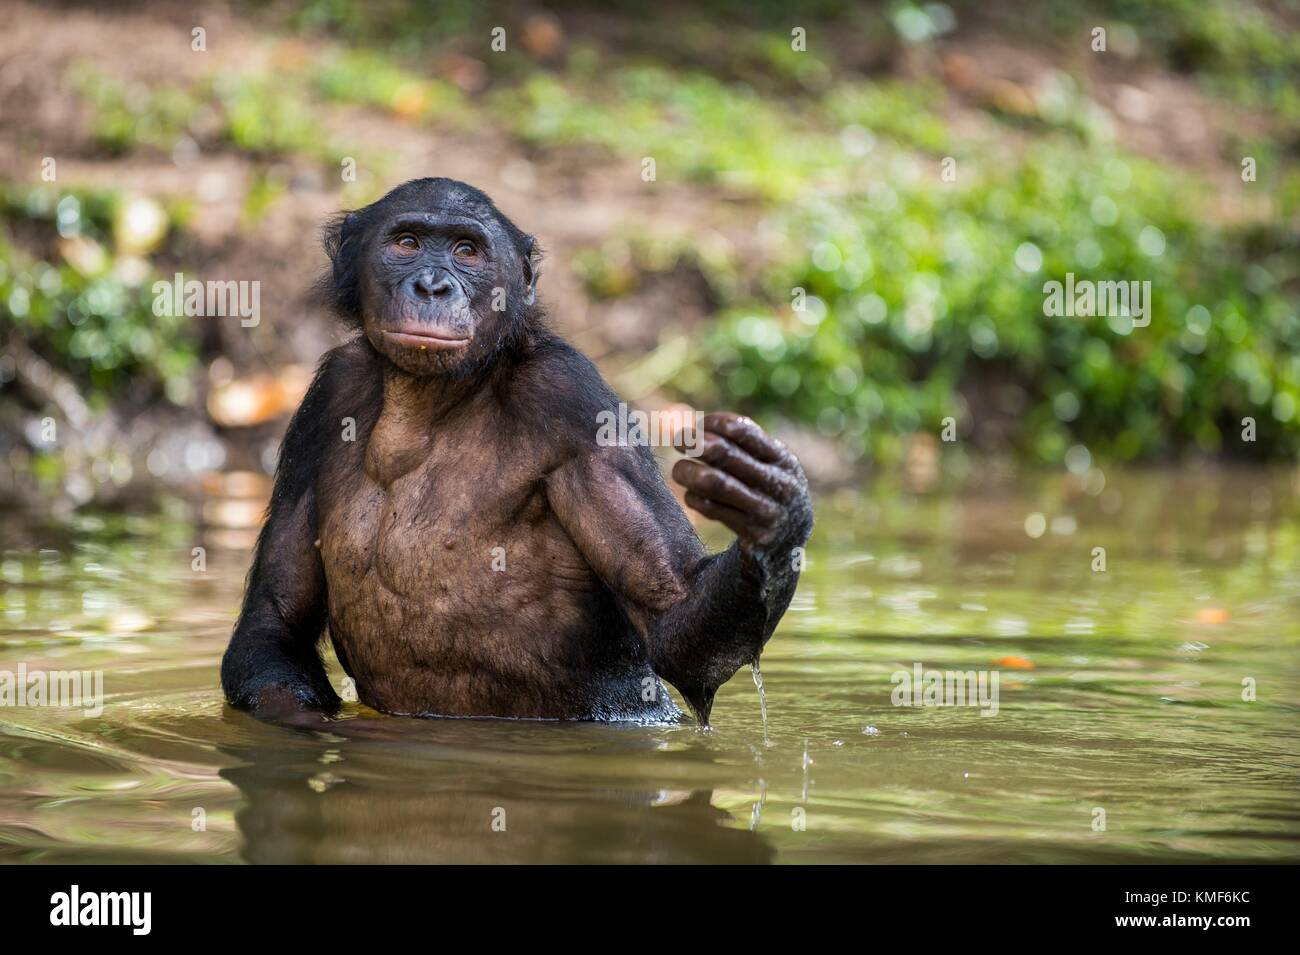 Bonobo stehend im Wasser sieht für die Frucht, die in Wasser fiel. Bonobo (pan paniscus). Demokratische Republik Kongo, Afrika Stockfoto